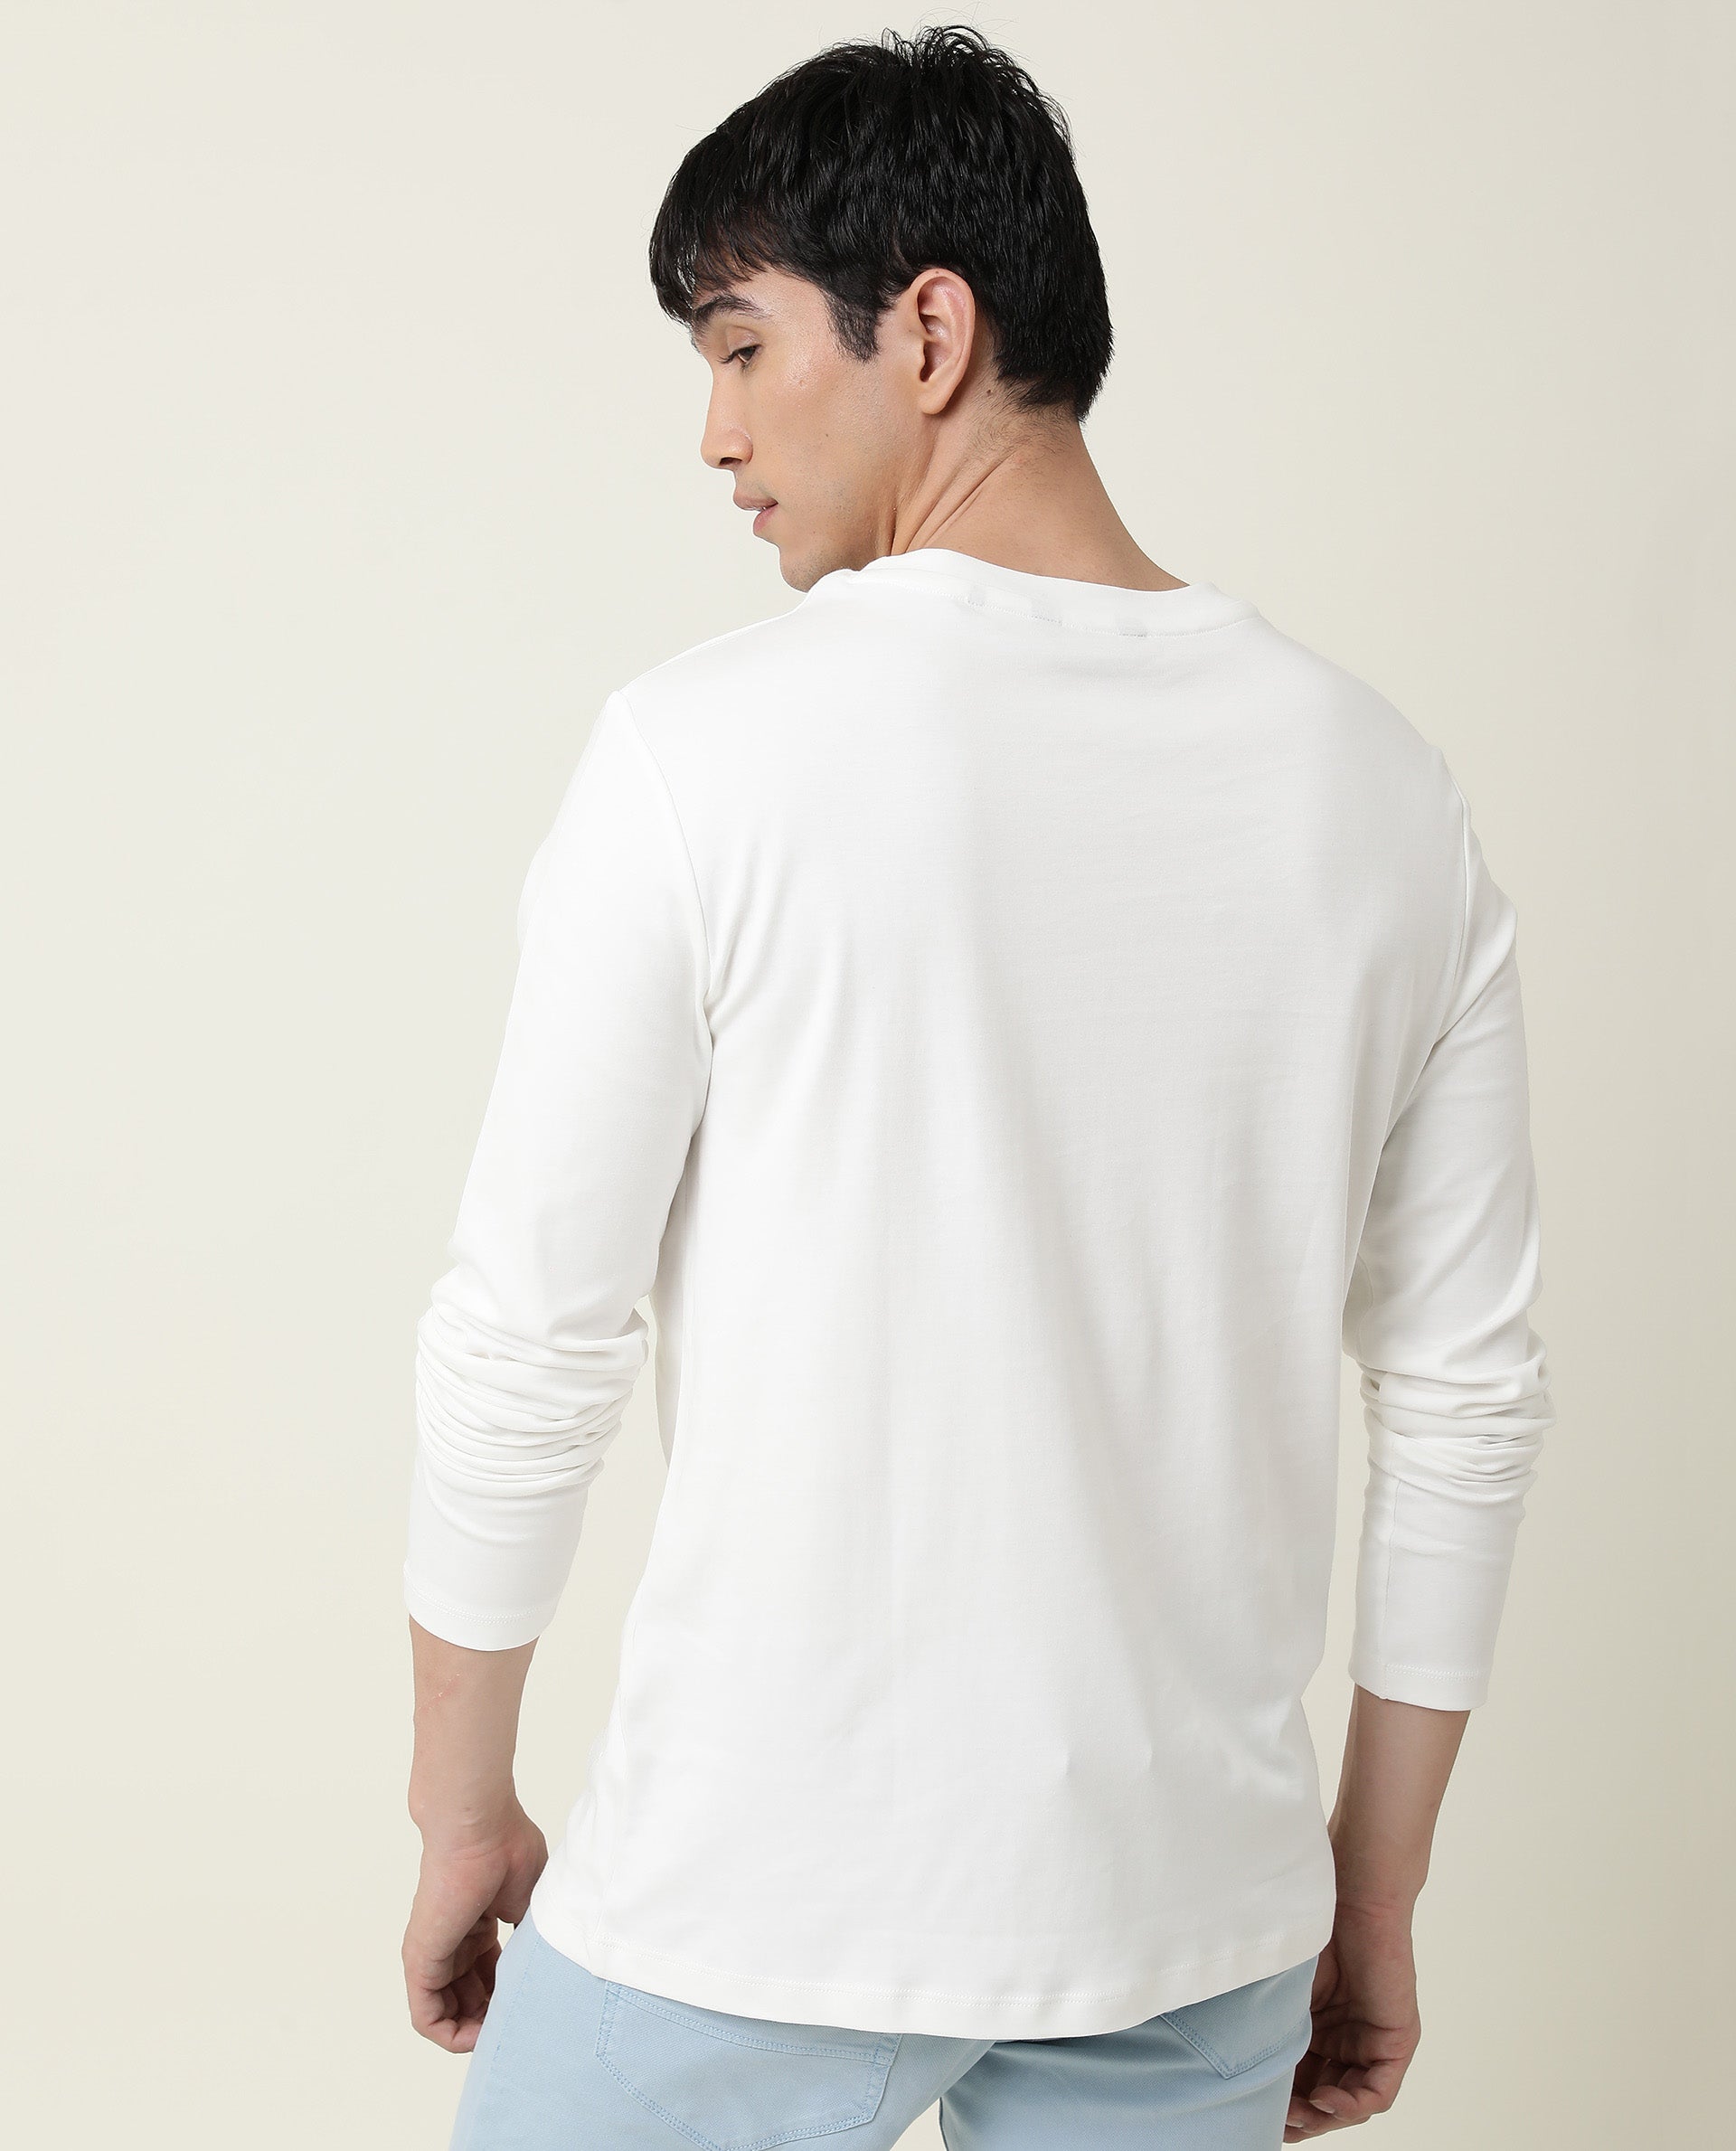 Buy Solids: Black (Oversized) Full Sleeve T-Shirt Online